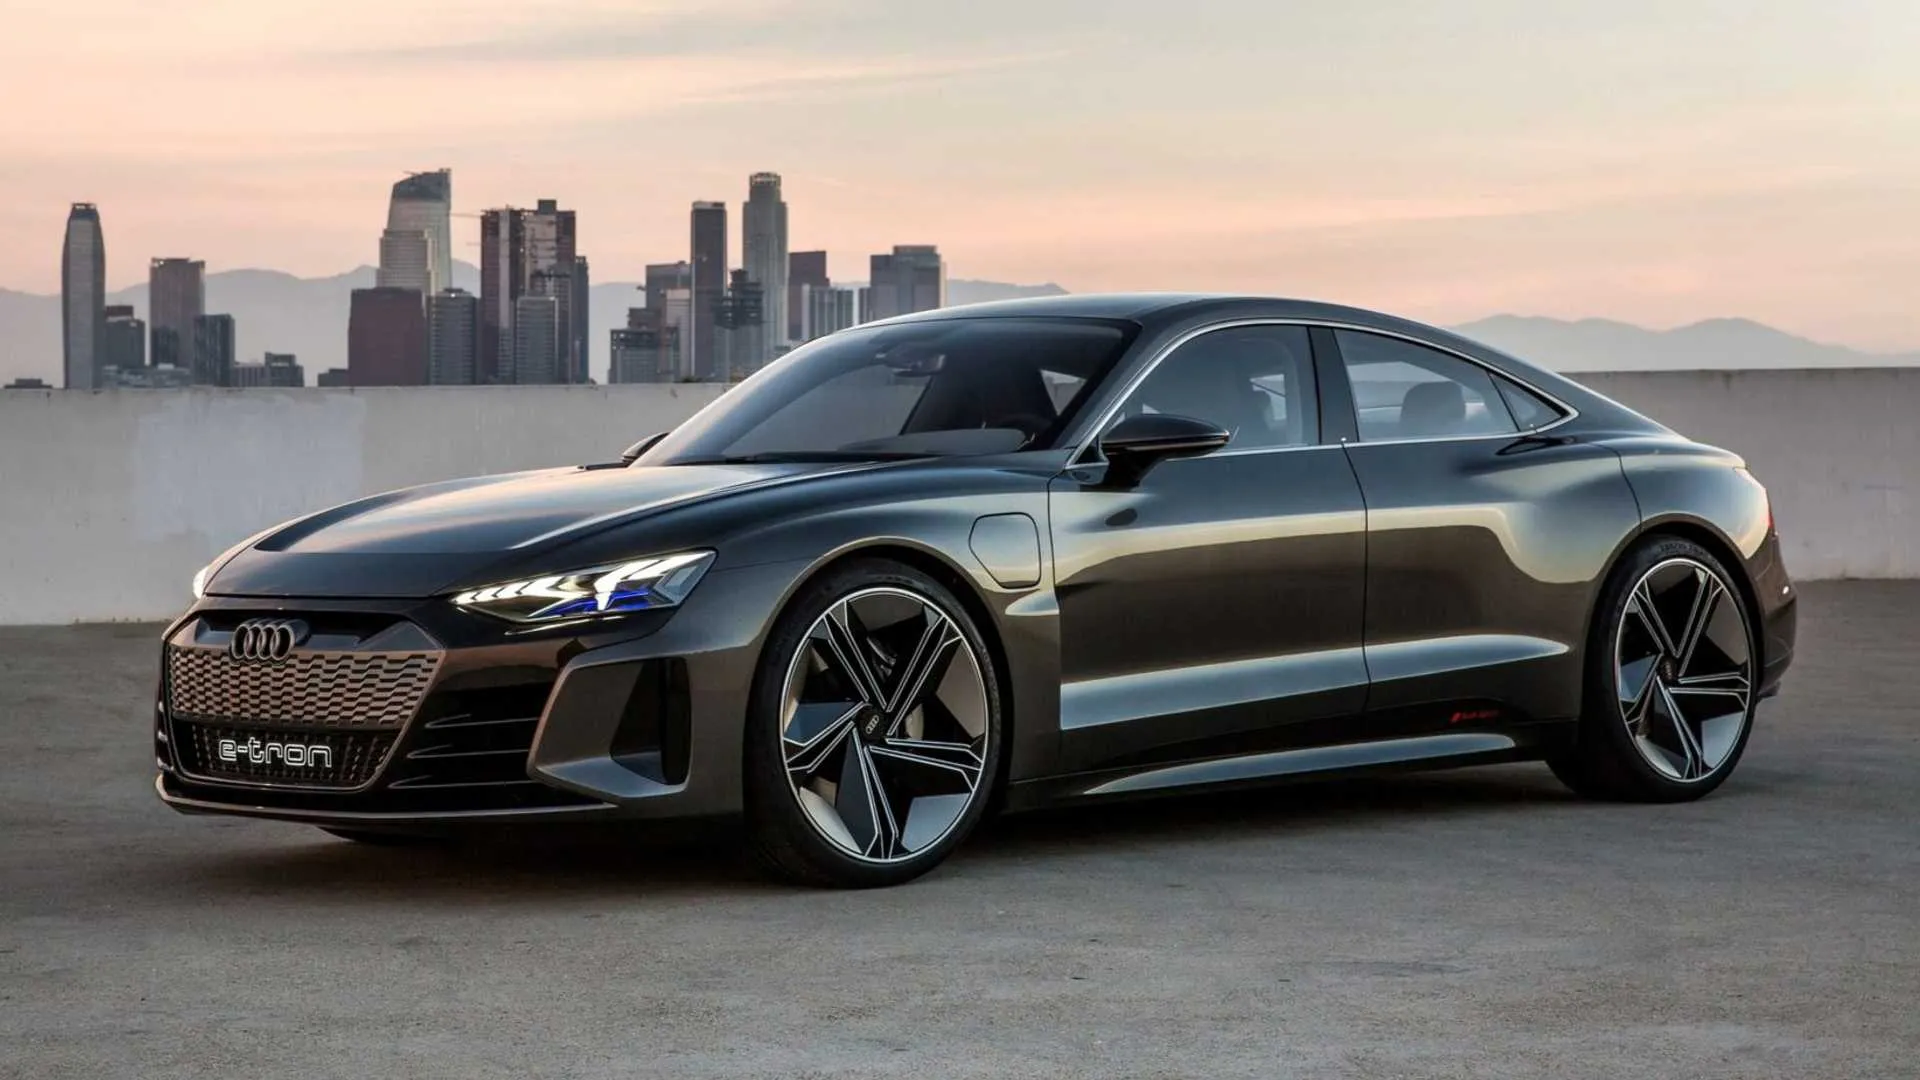 Audi نے اپنی e-Tron GT لانچ کی ہے، ایک خوبصورت الیکٹرک کار جسے Tesla کا مقابلہ کرنے کے لیے ڈیزائن کیا گیا ہے، جس کی بنیادی قیمت $100,000 ہے۔